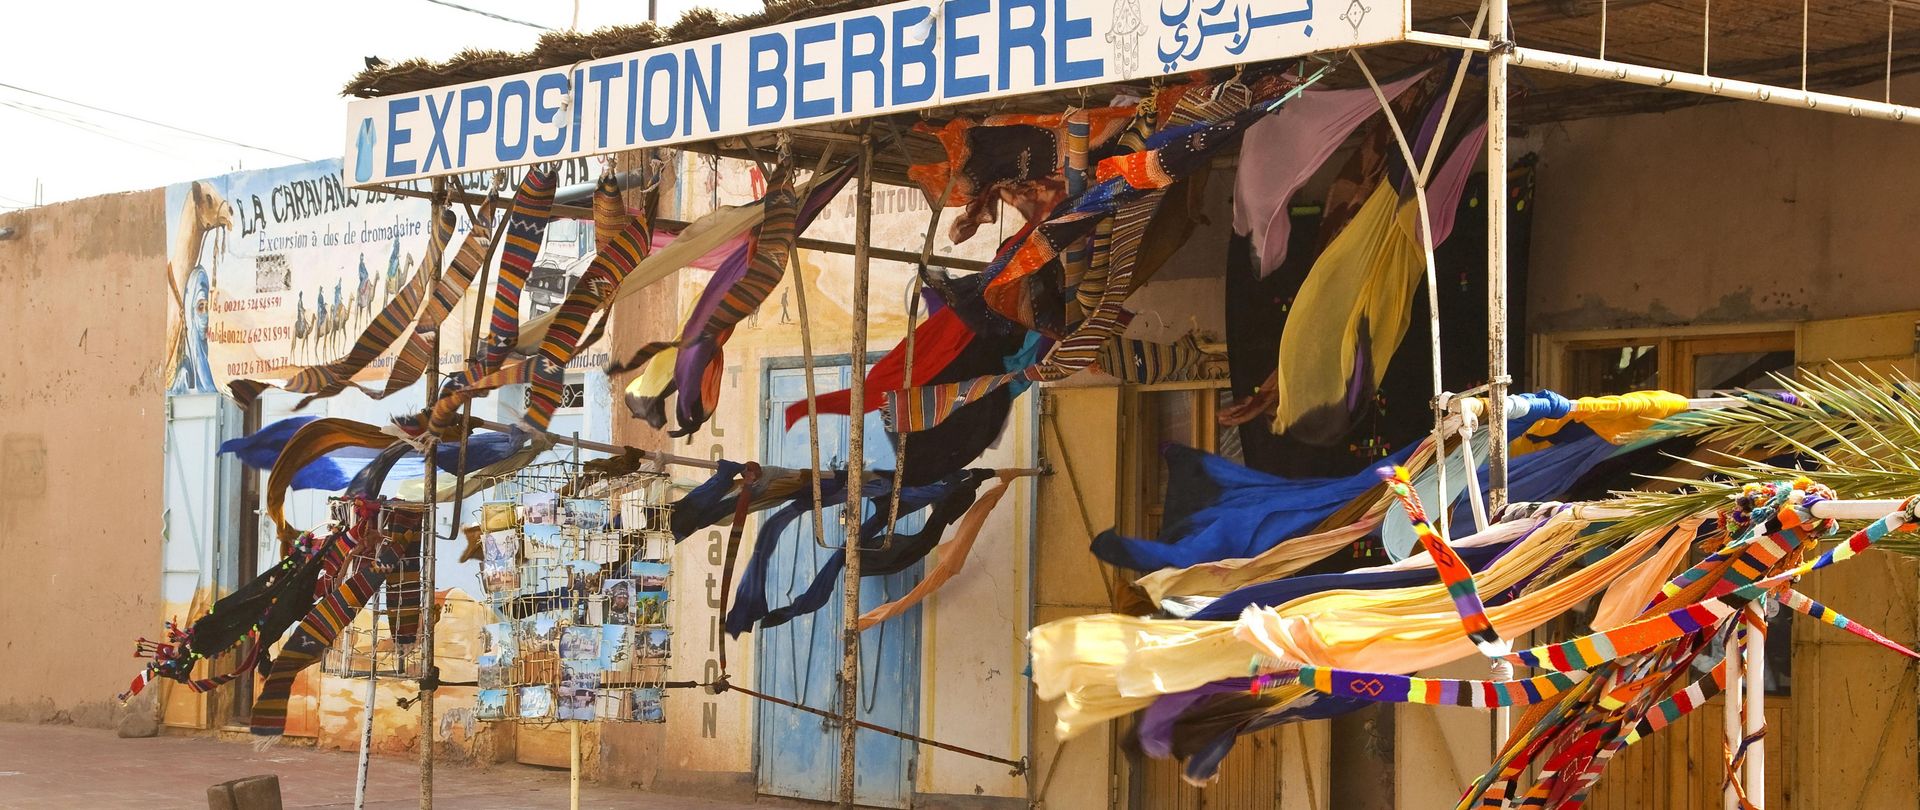 Am Rande der Sahara wirbelt der Wüstenwind einen Souvenirladen auf, den Imazighen am Rande einer Straße errichtet haben. Die Stadt M'hamid liegt in einem Transitraum geprägt durch die kulturellen Berührungen mit Durchreisenden. 